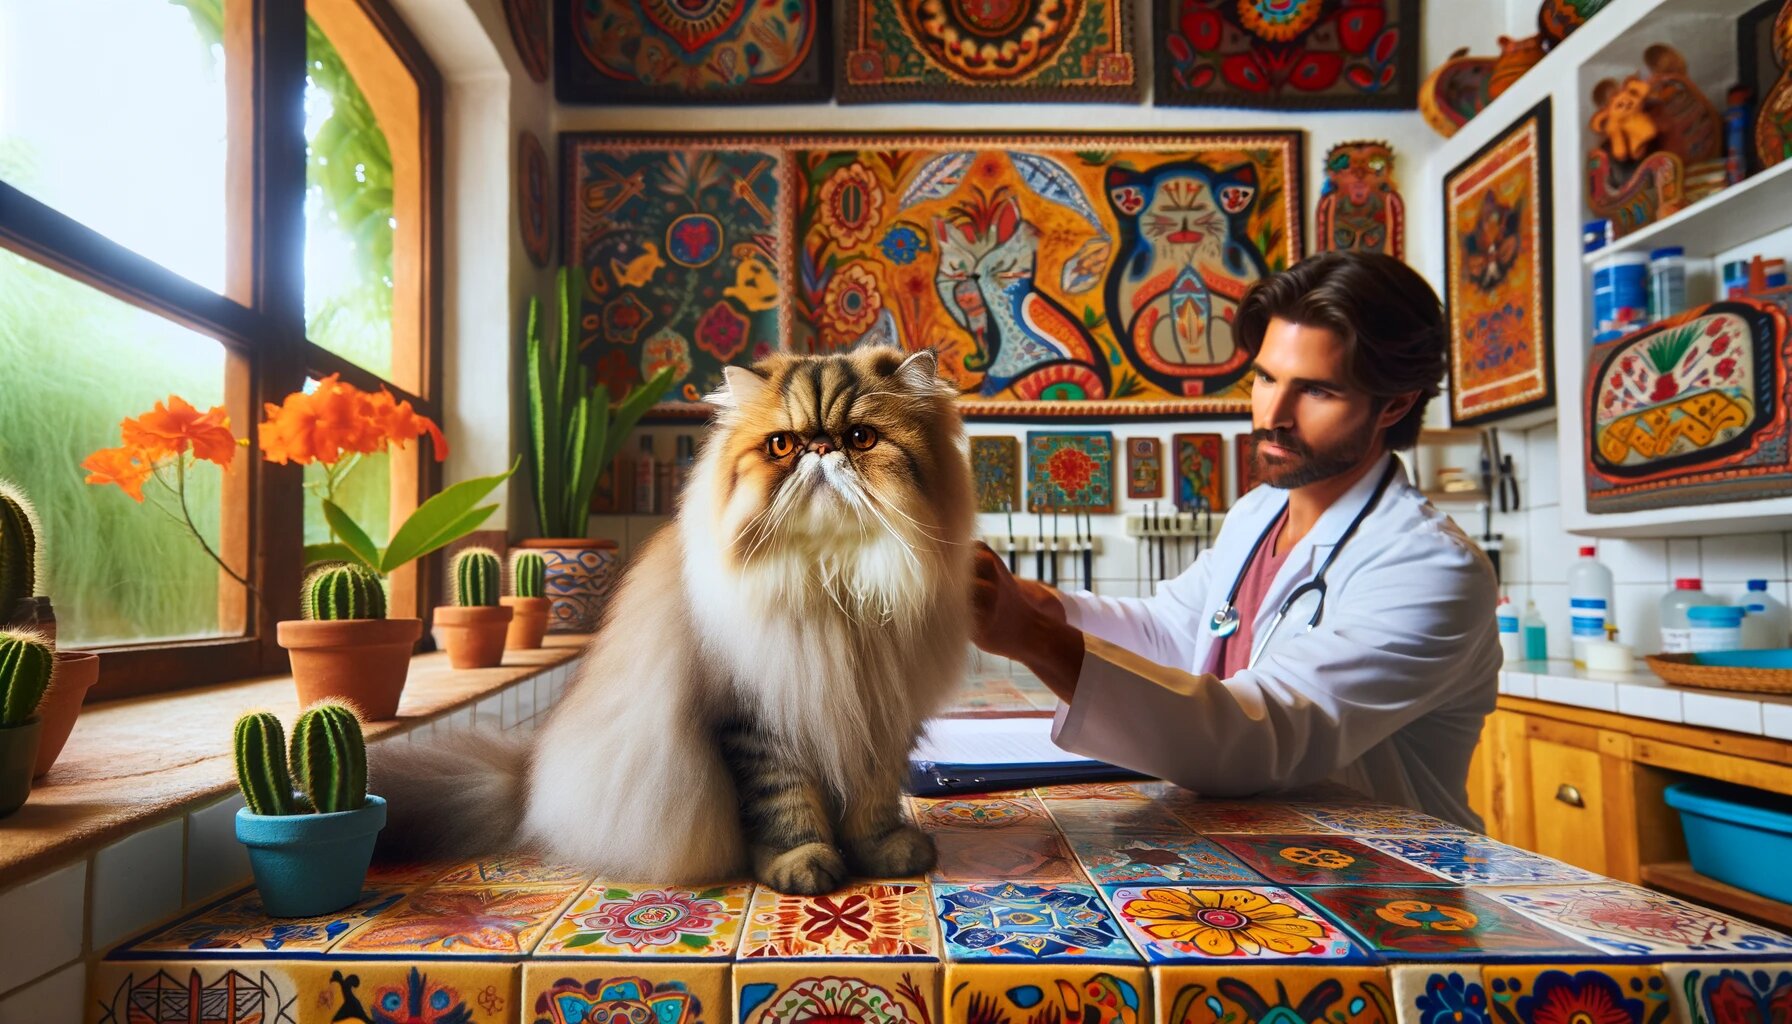 Gato persa en veterinario, decoración mexicana con azulejos cerámicos pintados y textiles vibrantes, interacción con el veterinario.